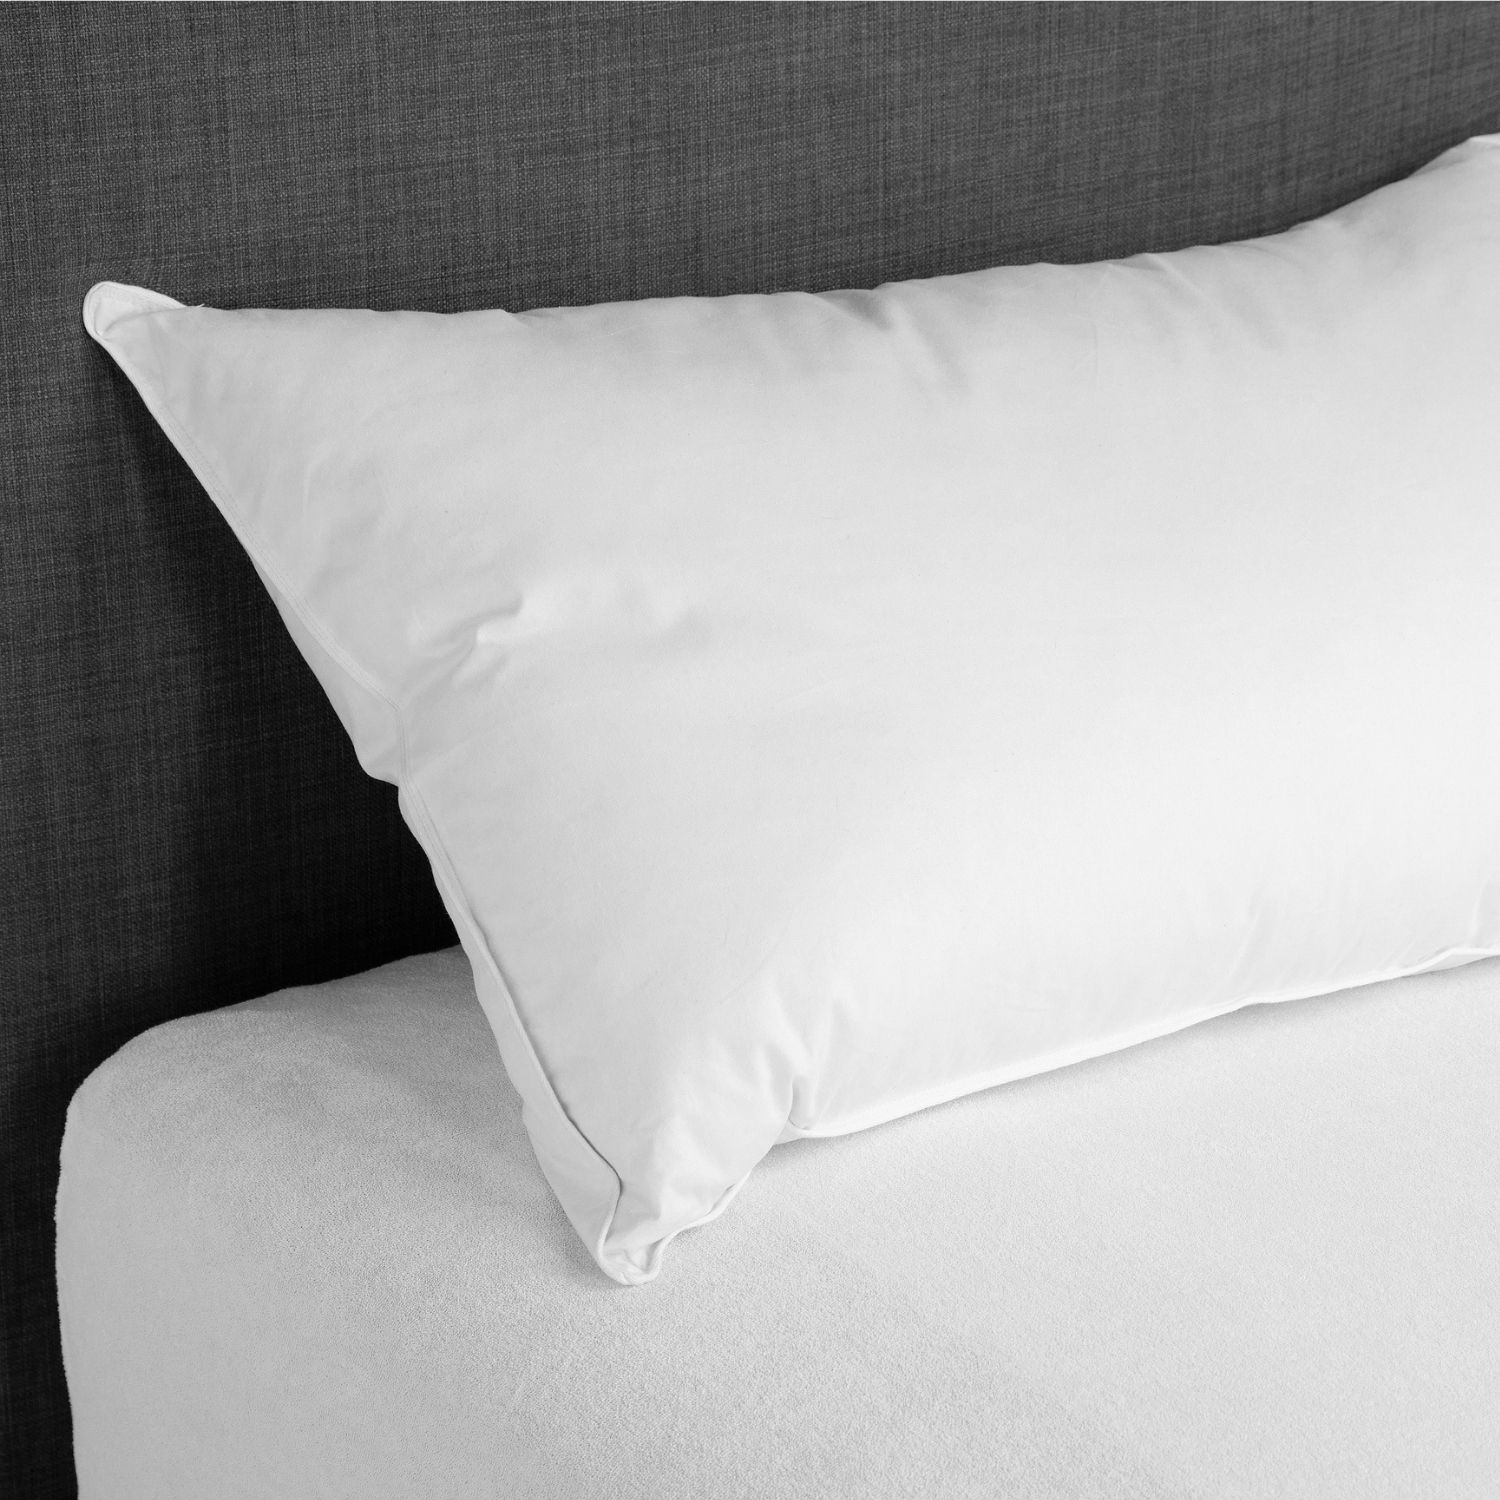 Synthetic fibre pillow Airella